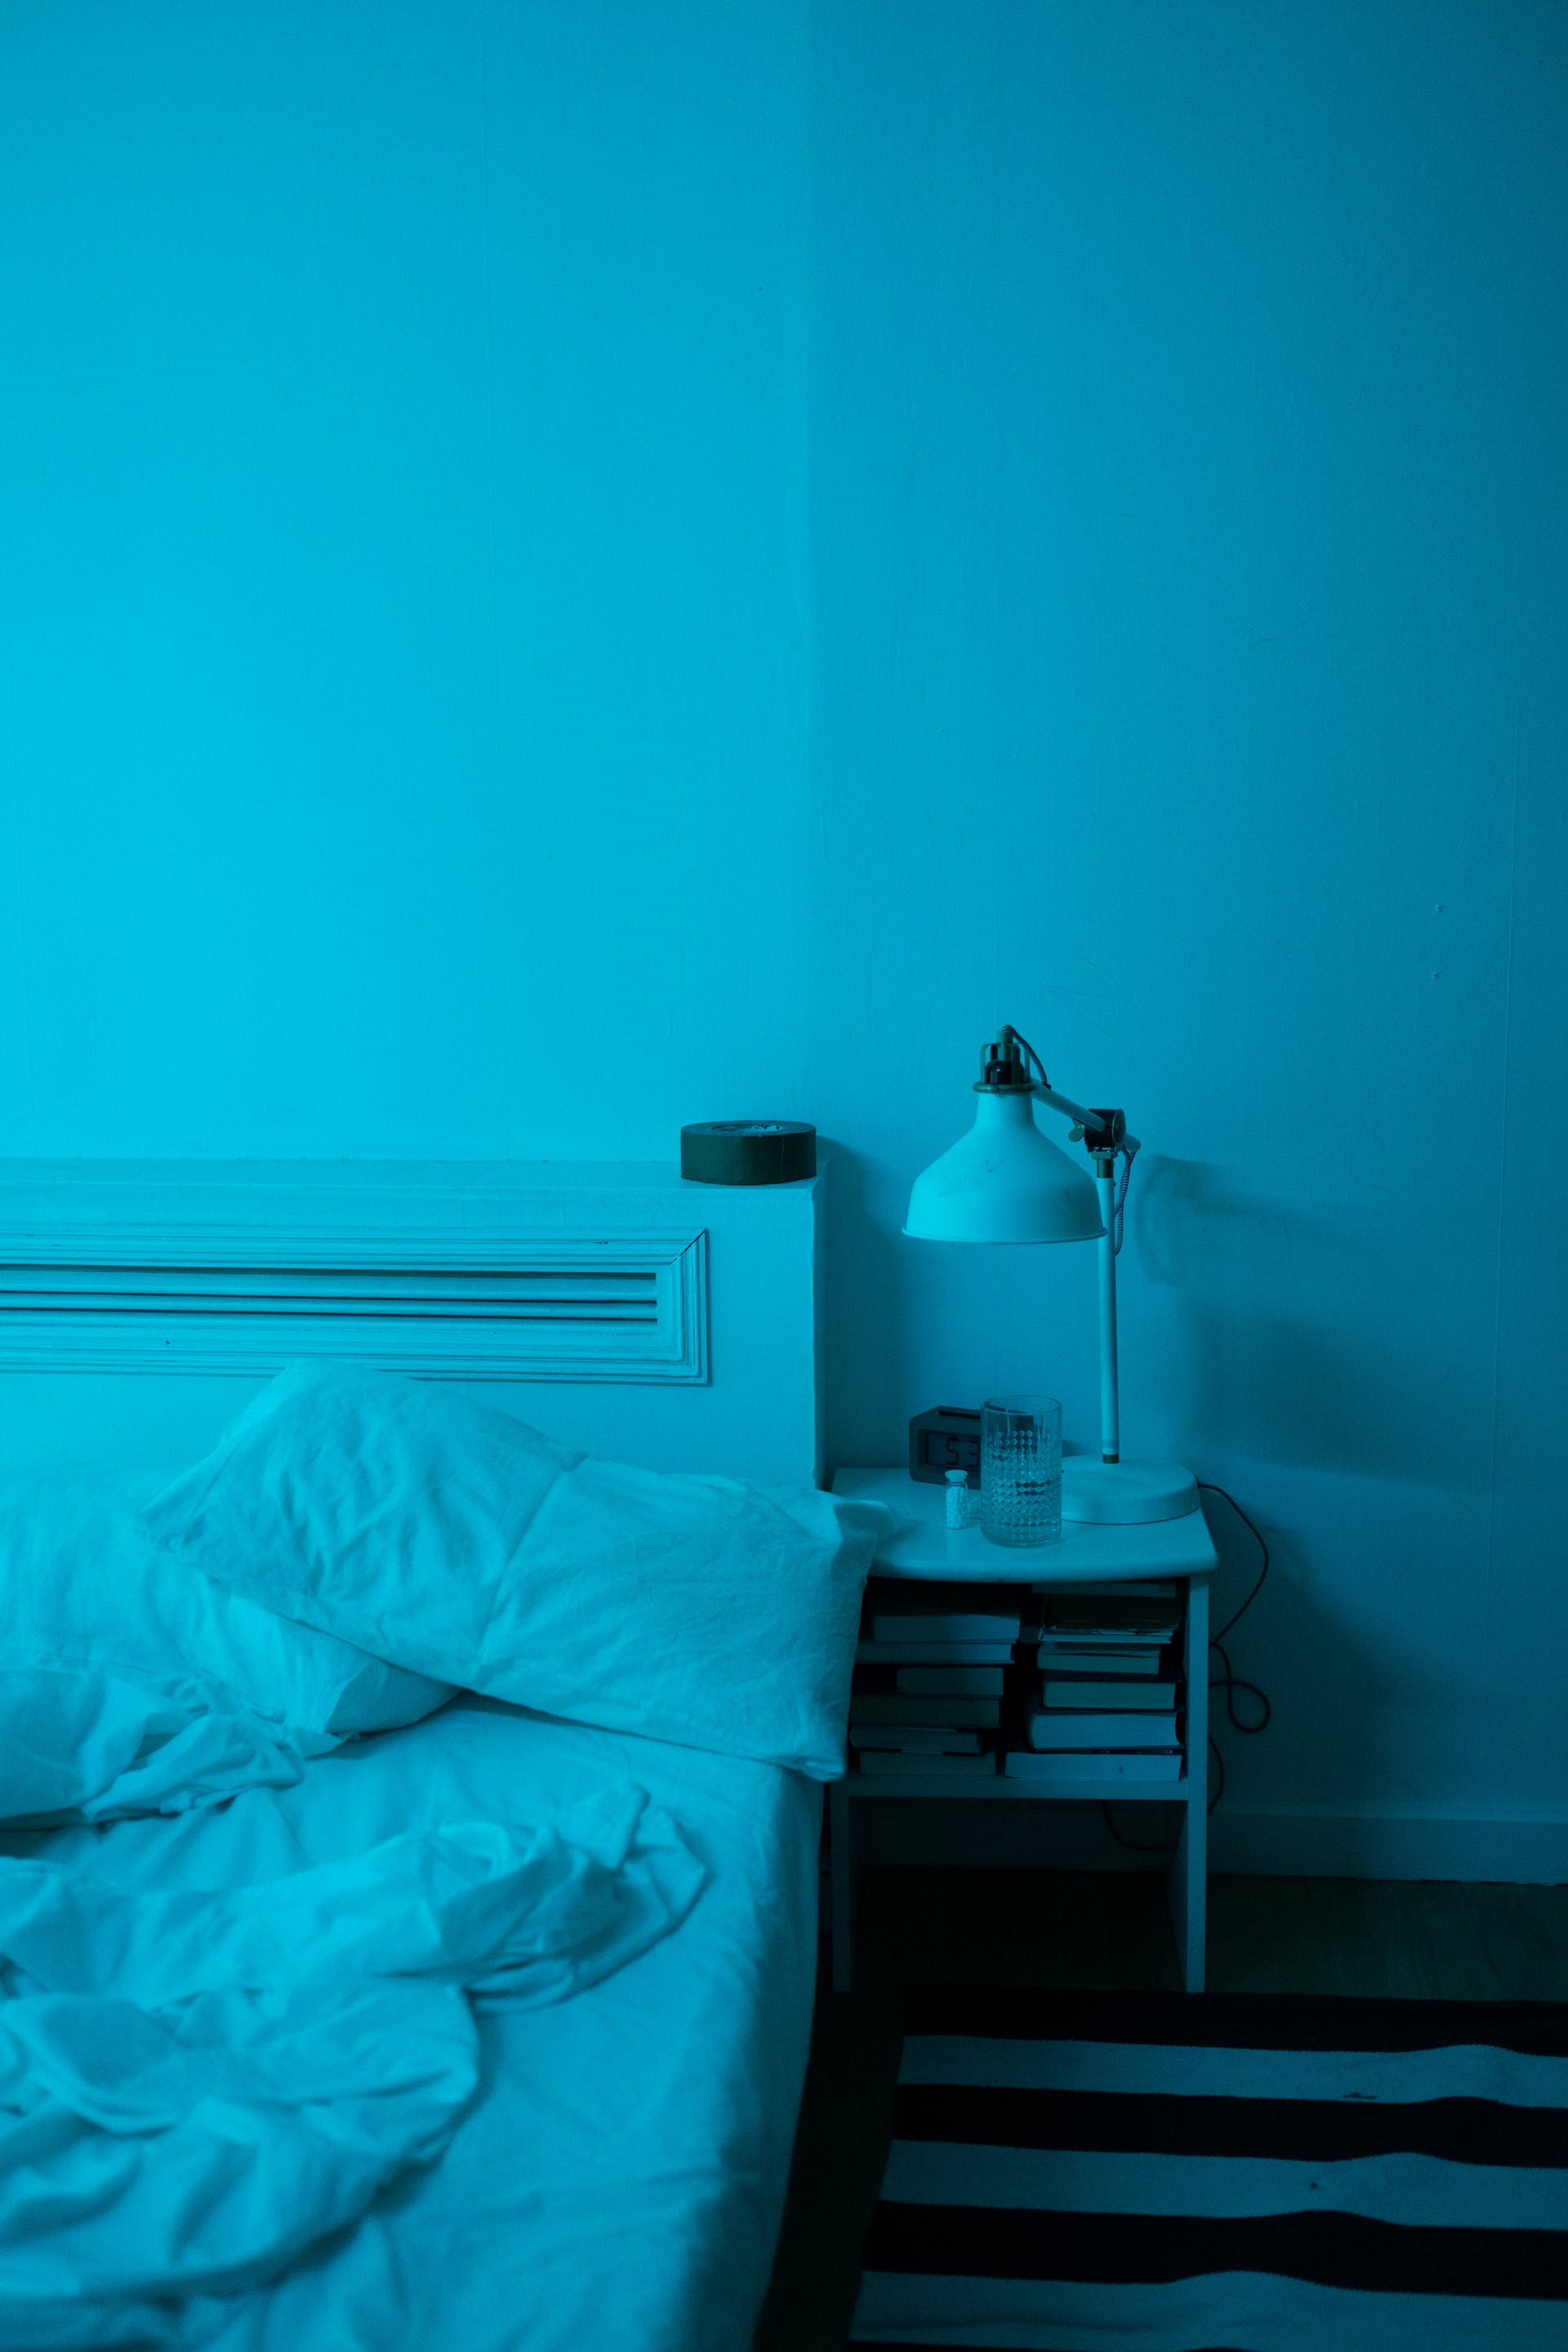 Leeres Bett in der Nacht | Quelle: Pexels